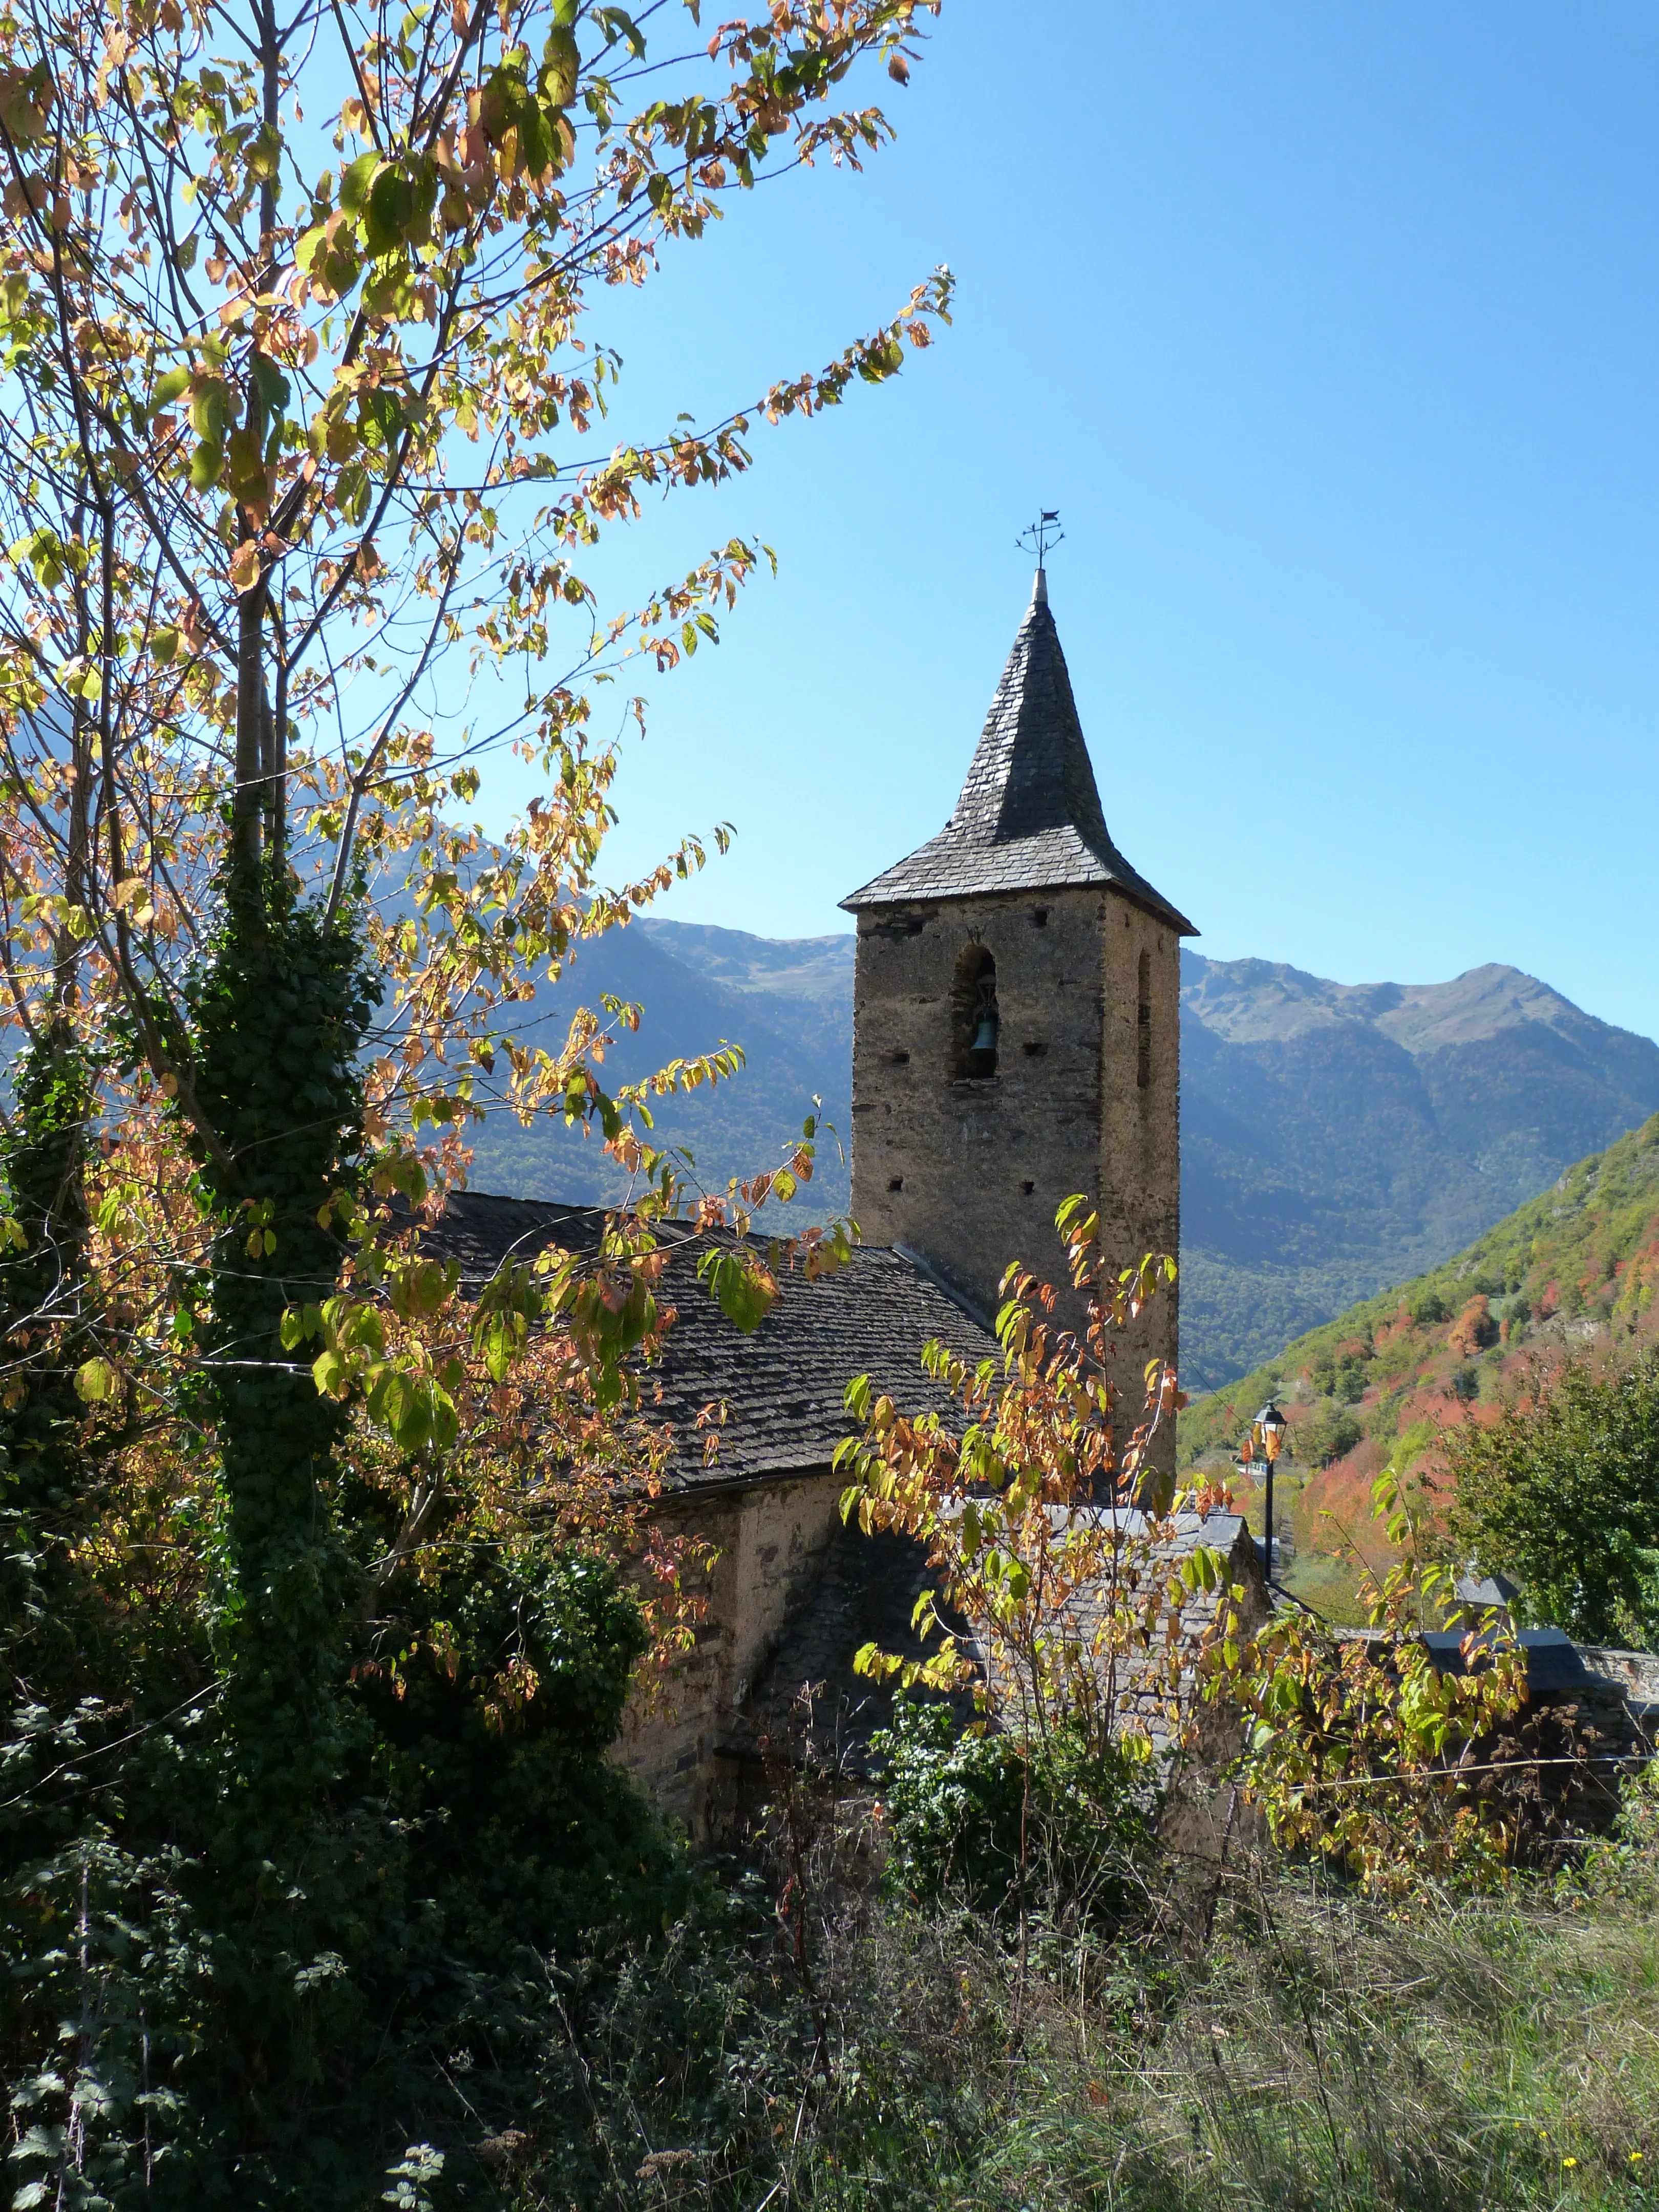 Vista de l'església de Sant Ròc de Begós des de l'exterior amb uns arbres davant. 